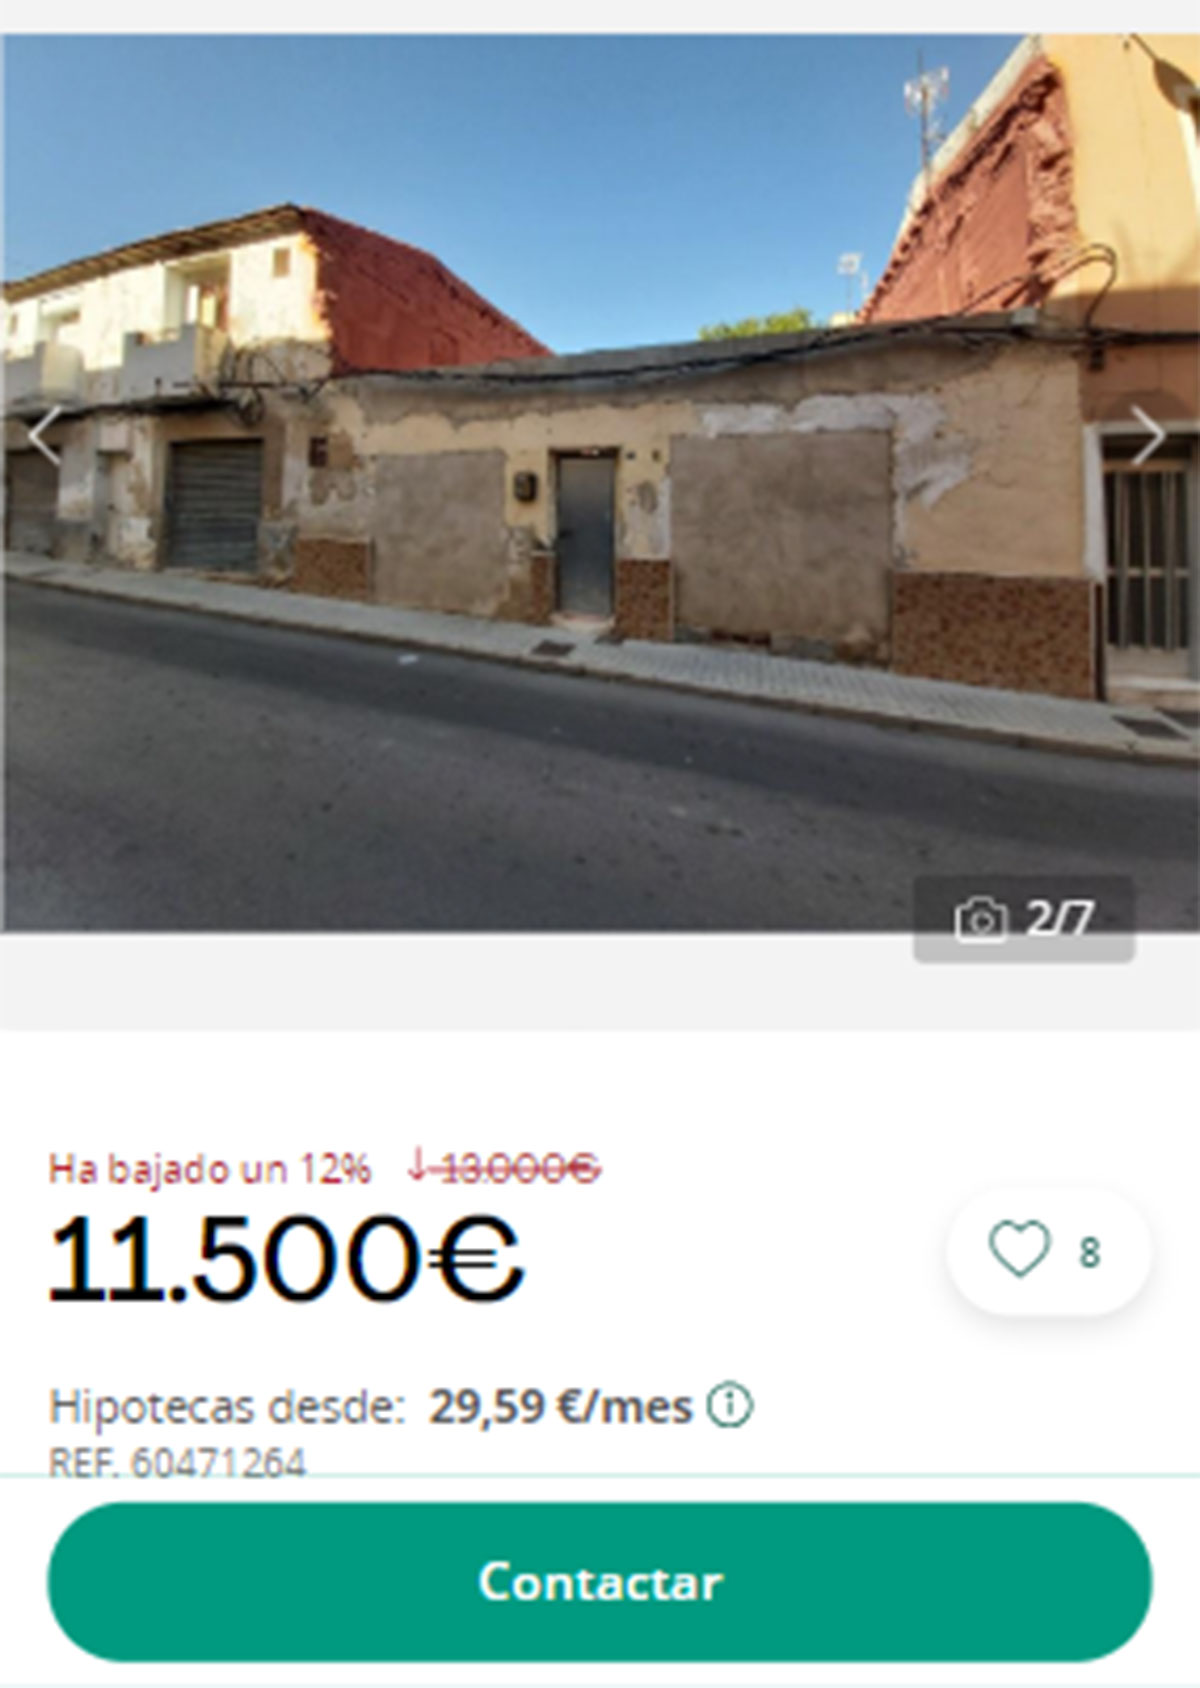 Piso en pueblos de Alicante por 11.500 euros